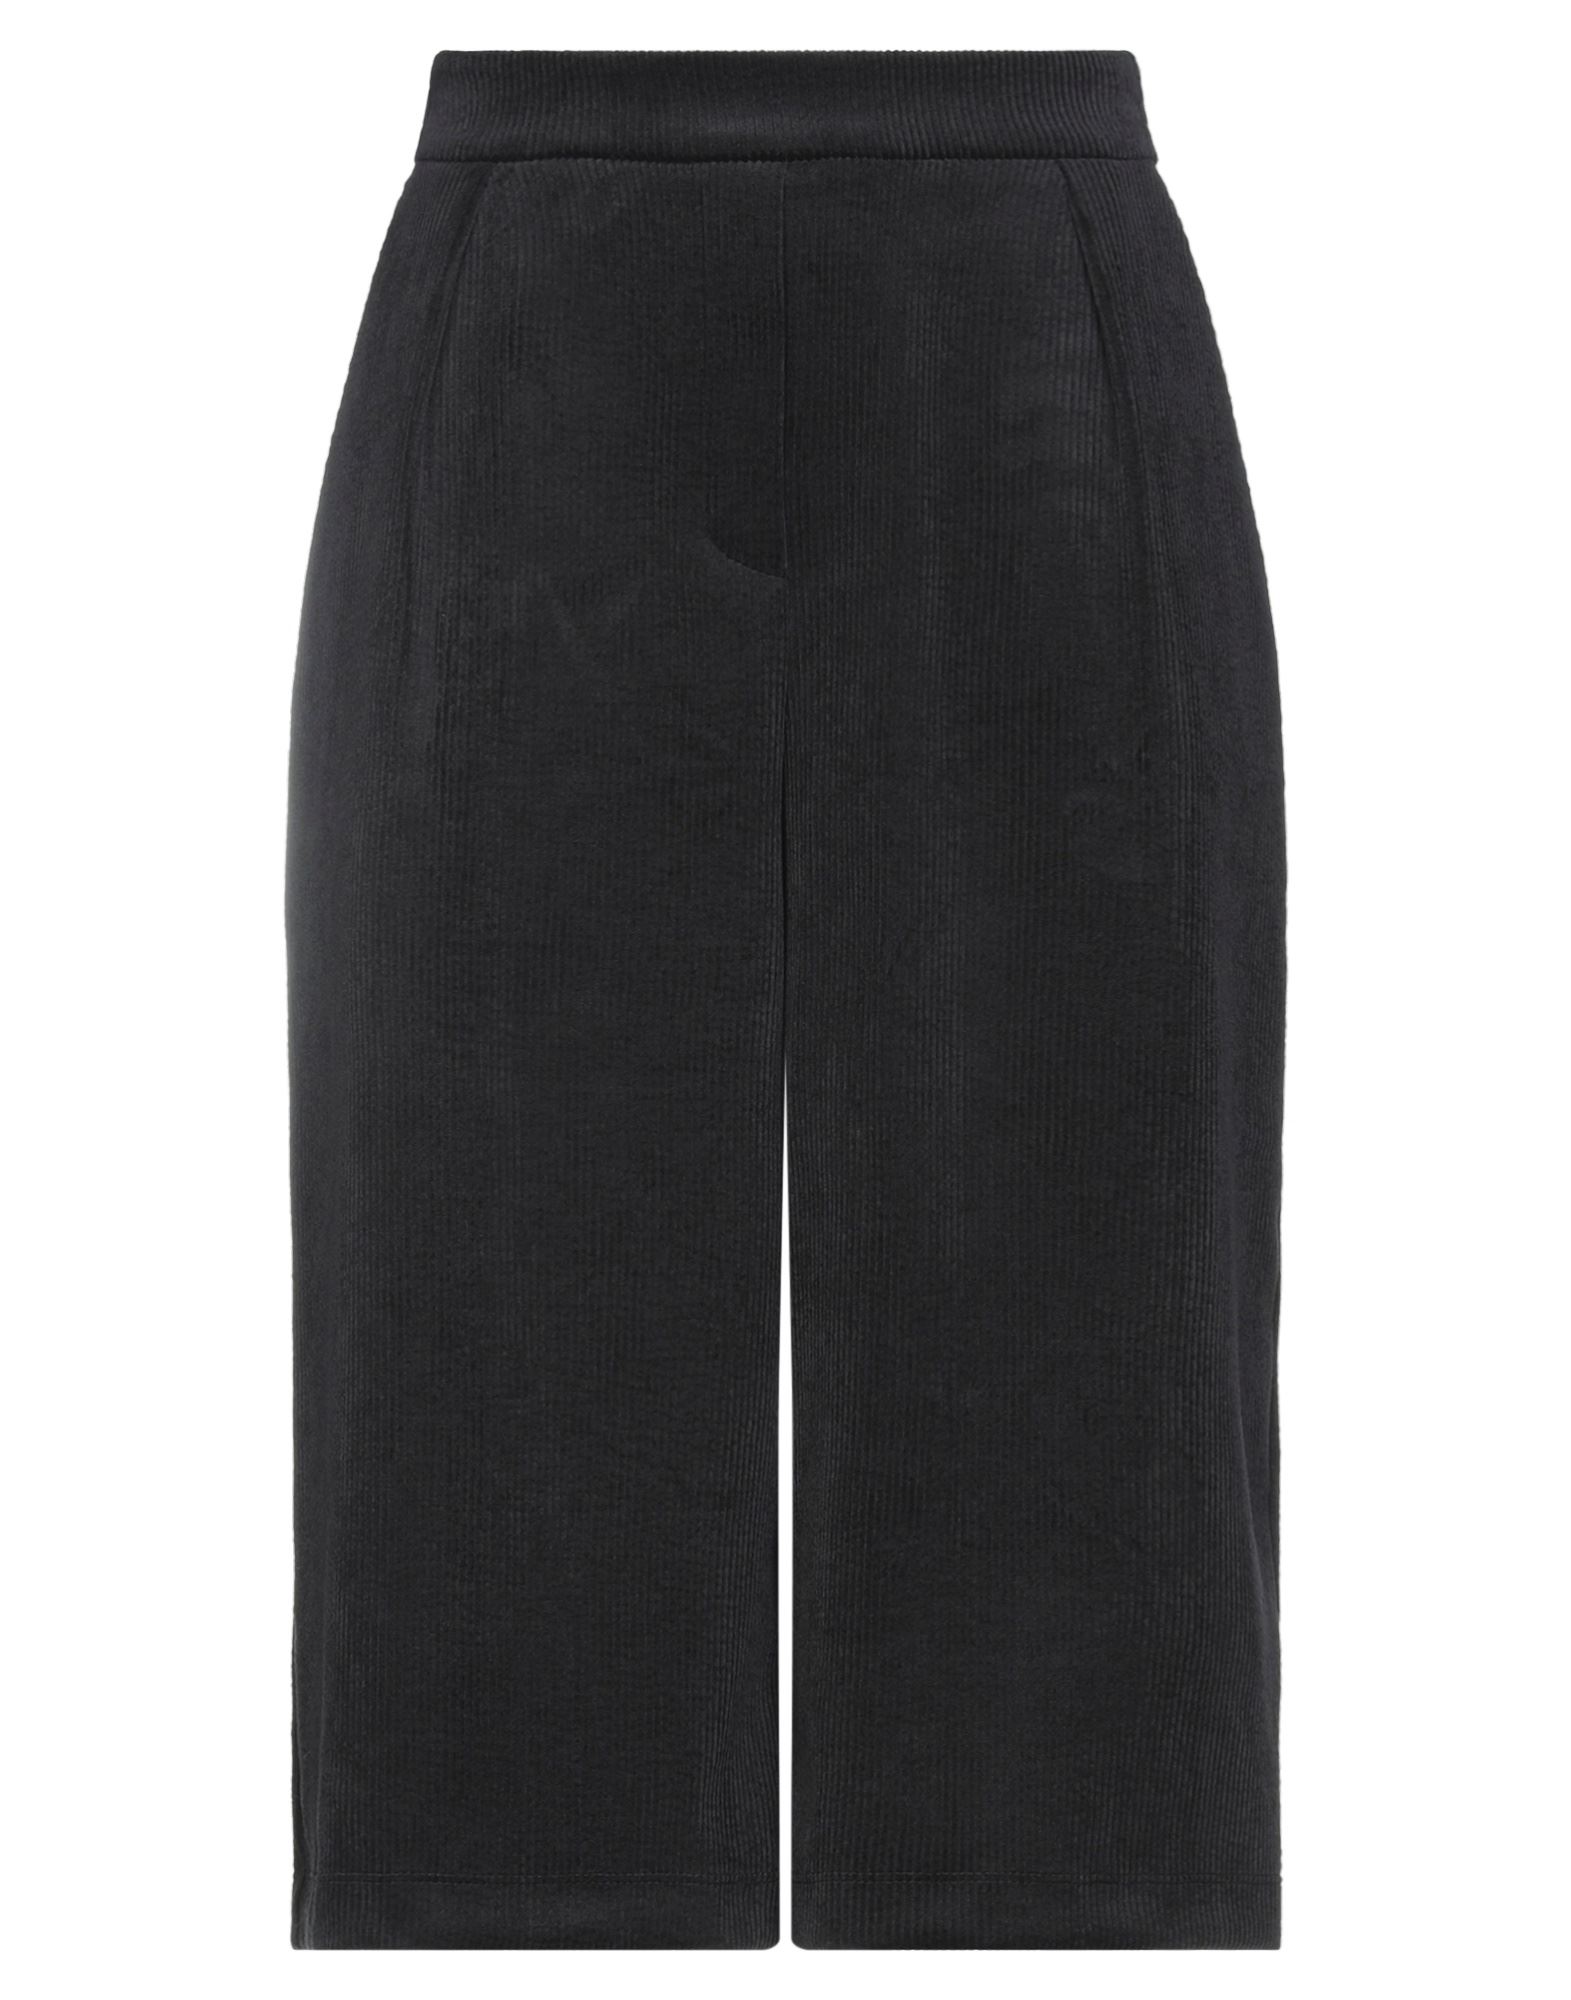 8pm Woman Cropped Pants Black Size S Polyester, Nylon, Elastane